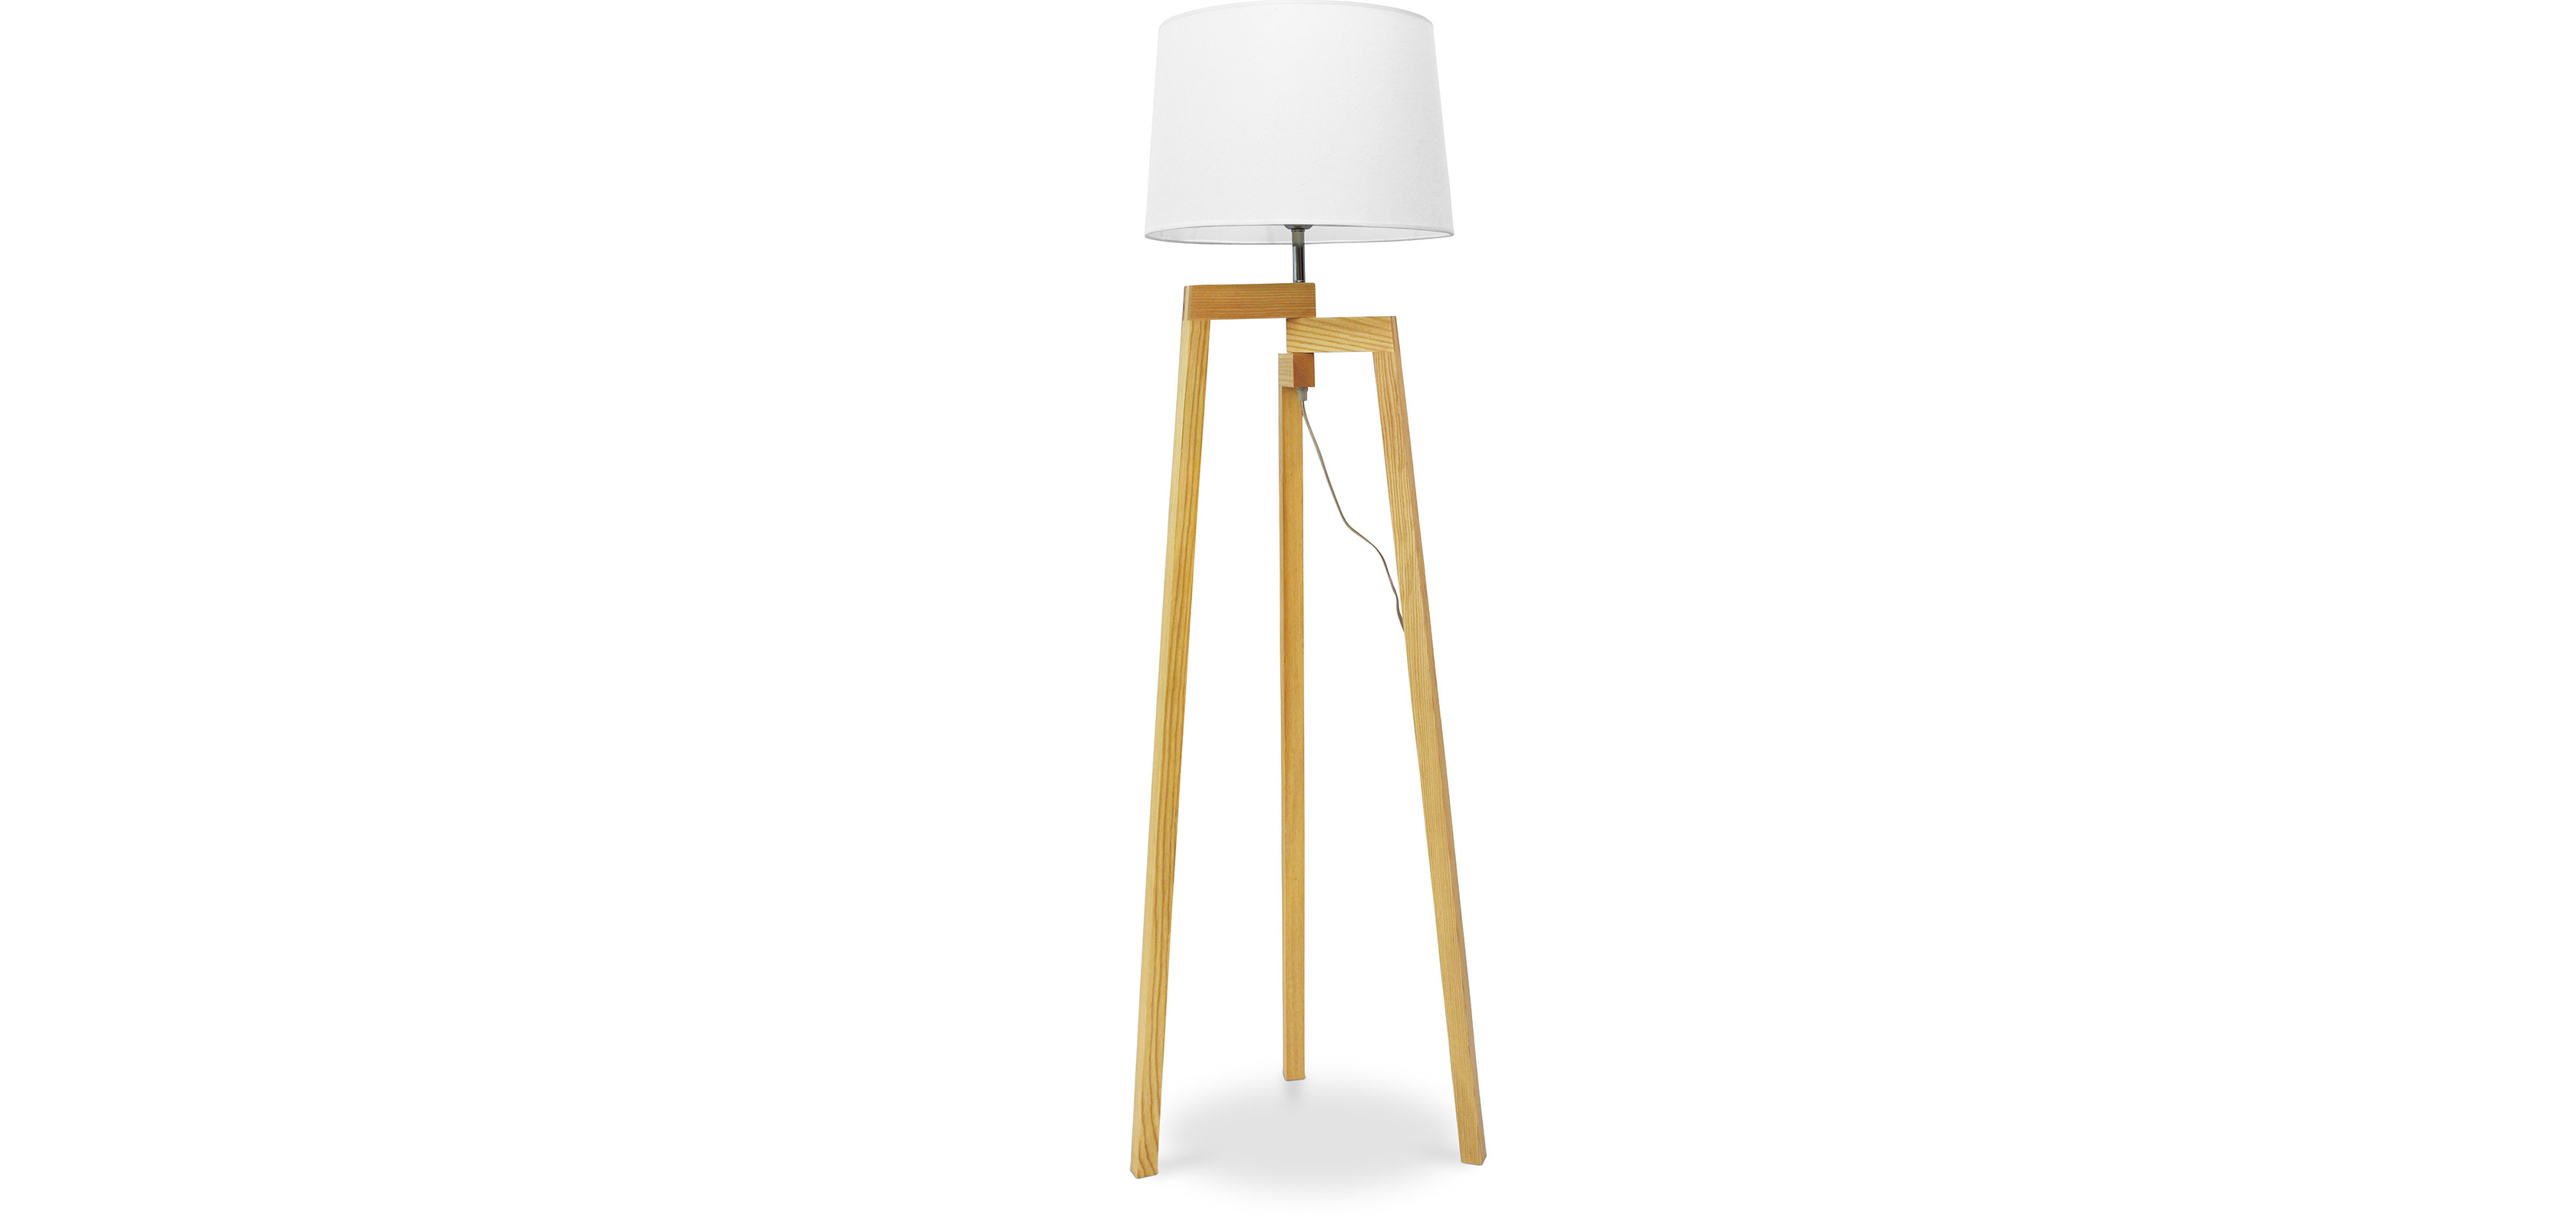 Dreibein Stehlampe - Wohnzimmerlampe im skandinavischen Design - Lon